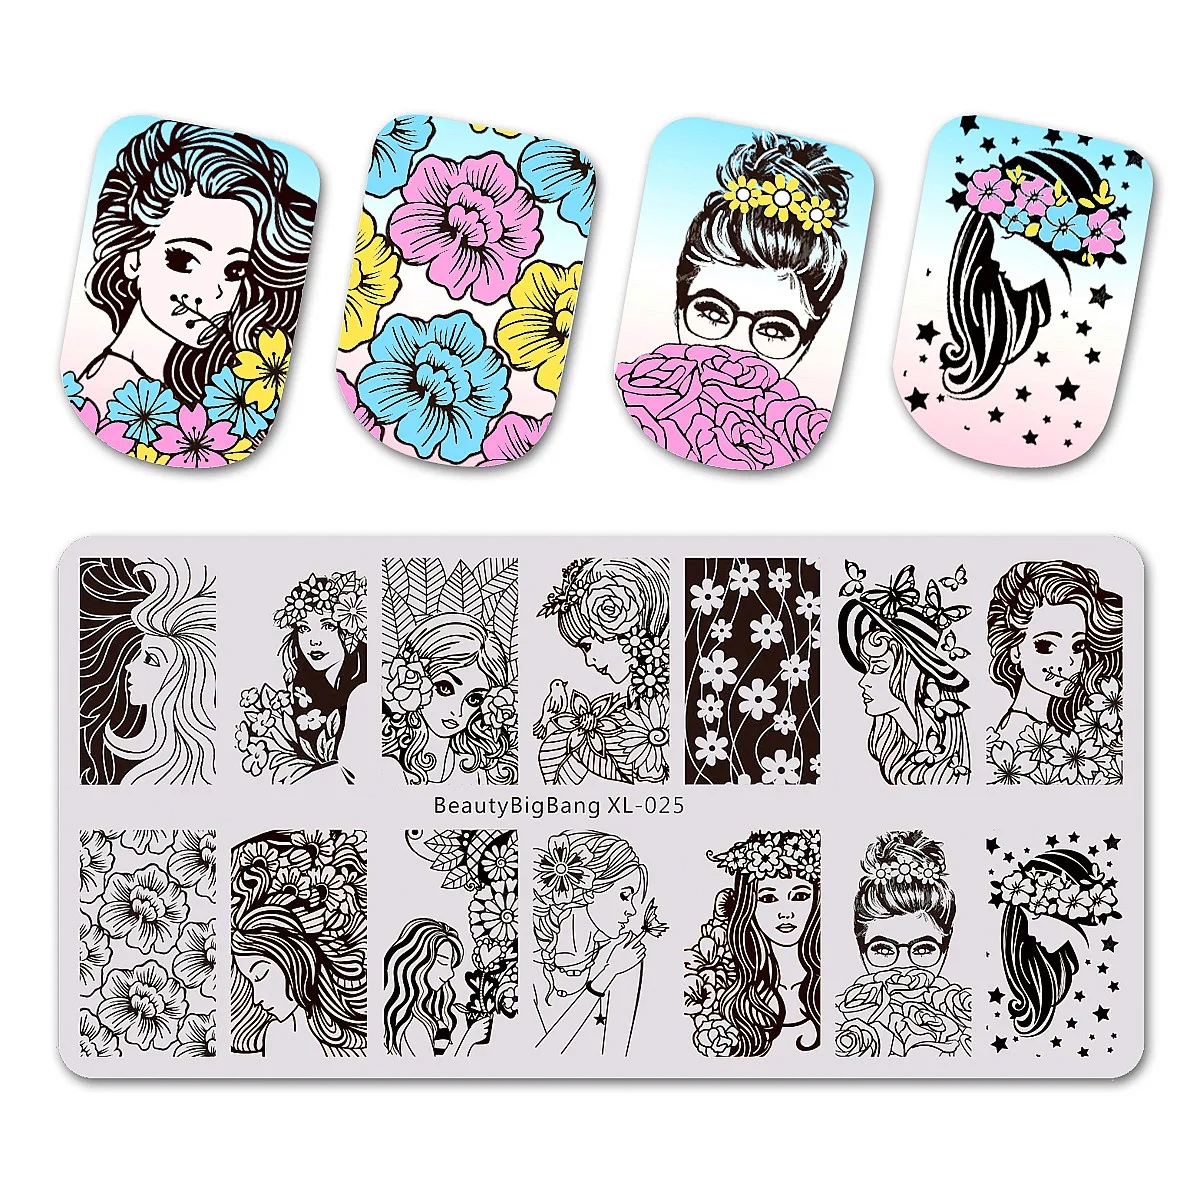 BeautyBigBang кружева тема ногтей штамповки пластины сексуальное изображение 6*12 см нержавеющая сталь шаблон пластина для стемпинга для нейл-арта BBB XL-035 - Цвет: 25